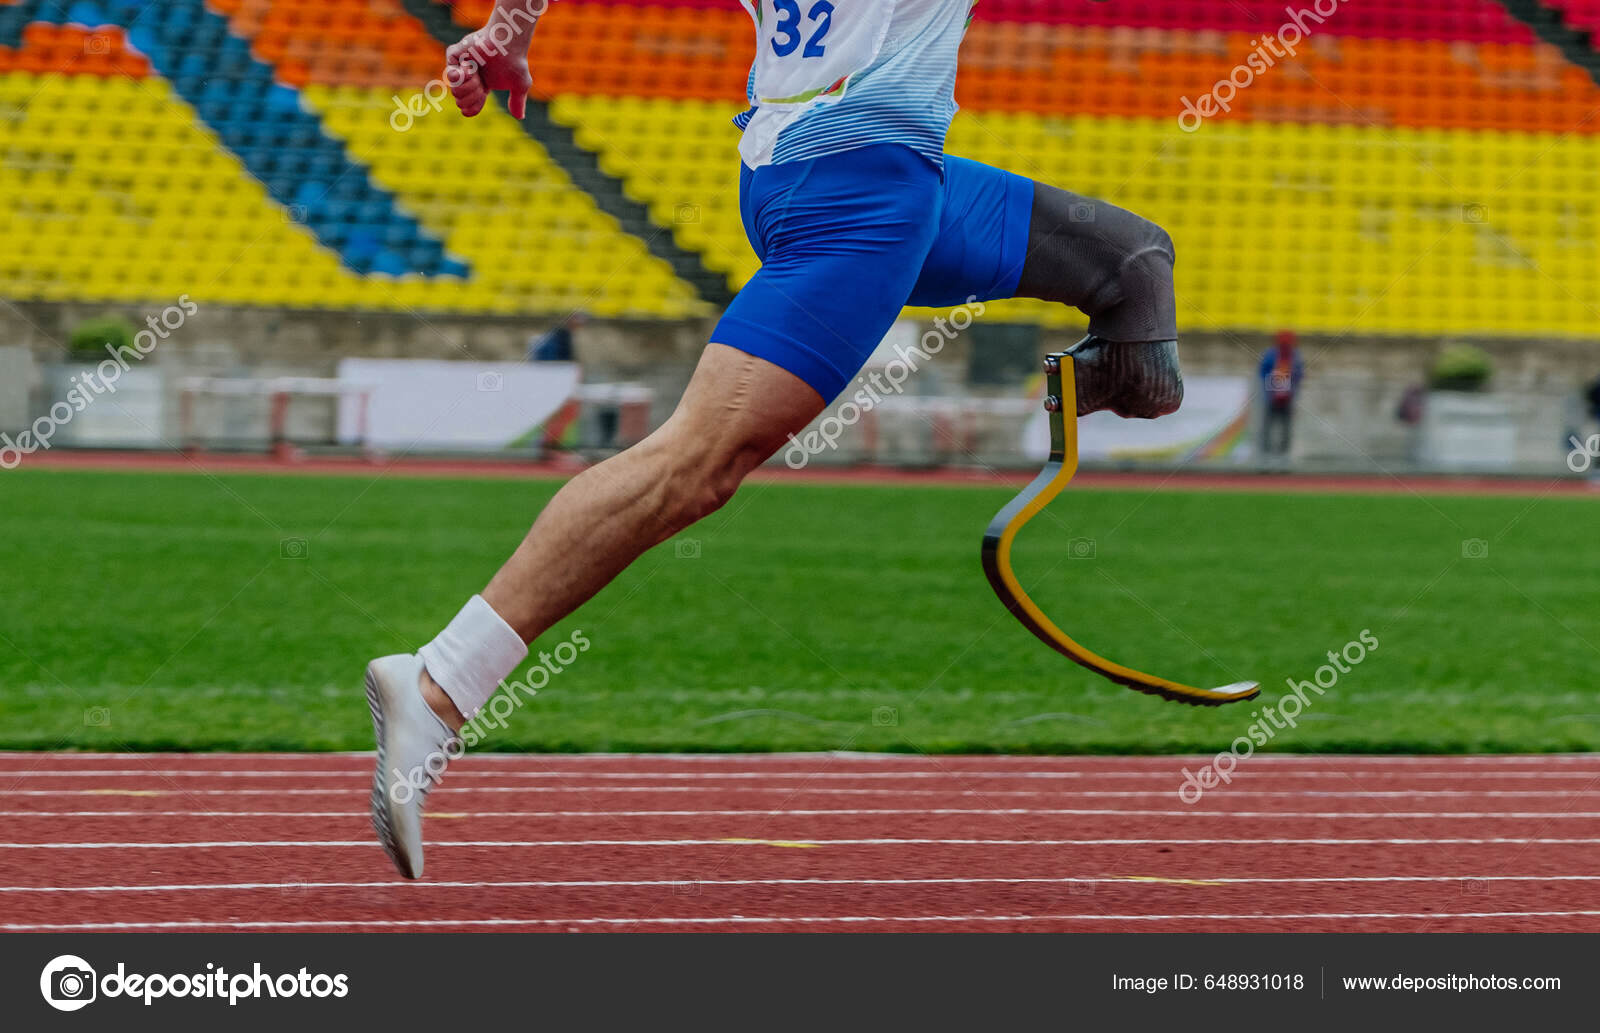 Pessoas com deficiência correndo atleta rápido corredor em